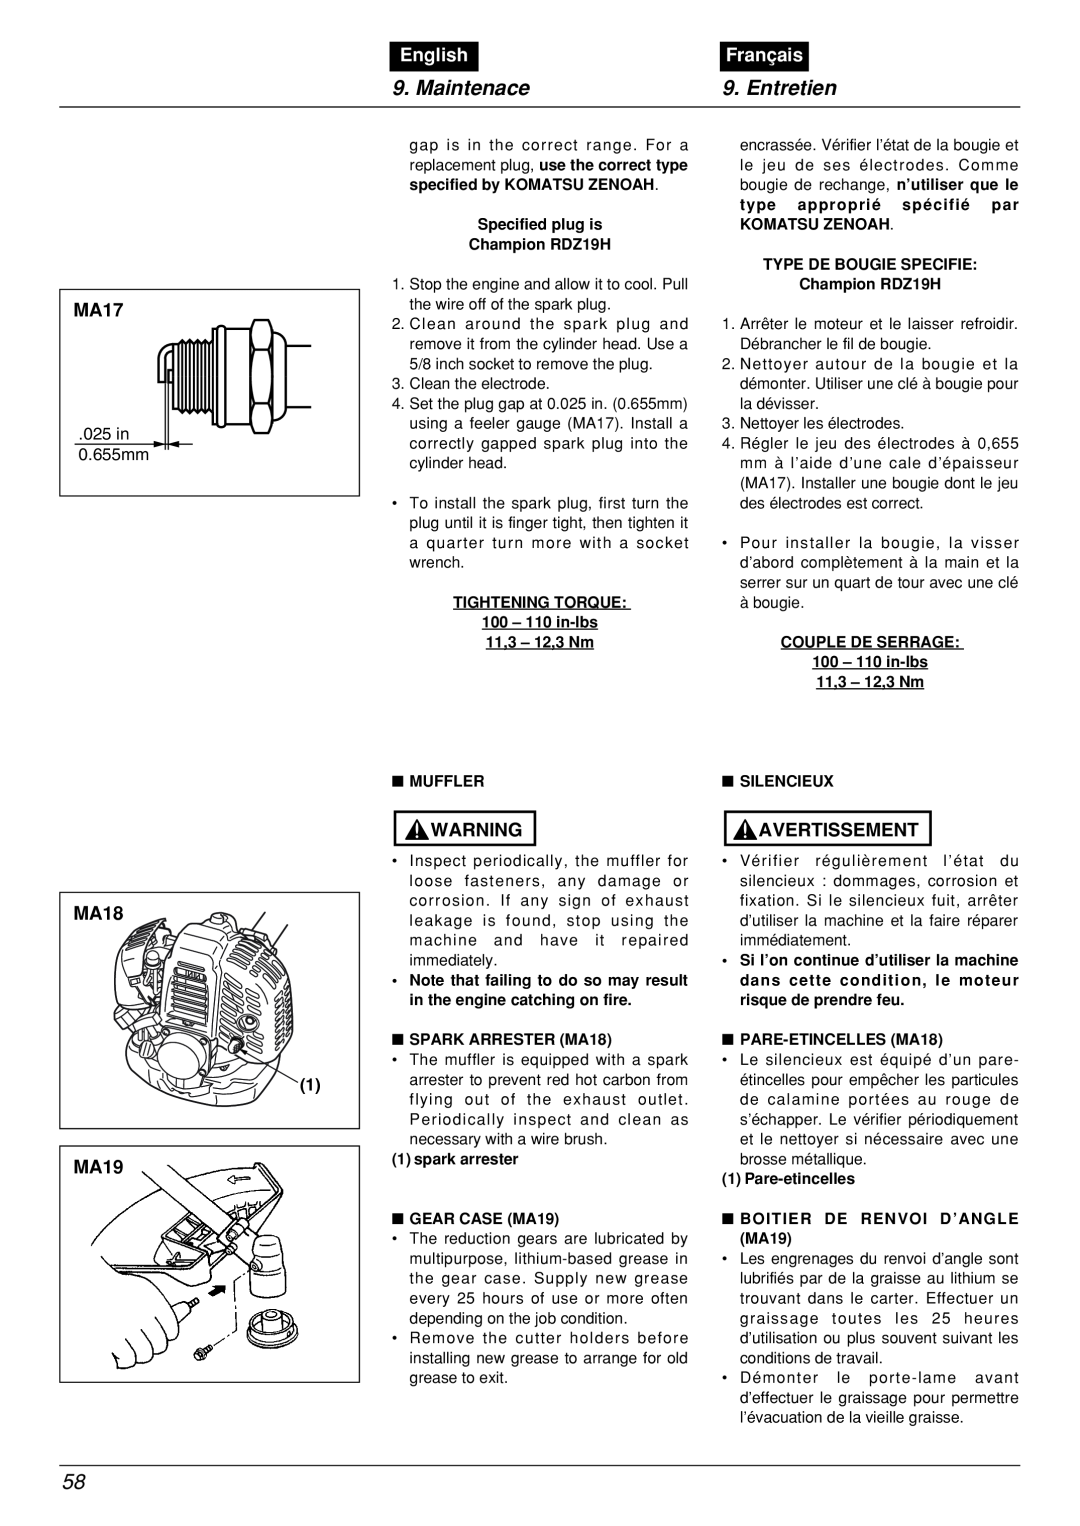 Zenoah BCX2601DL manual Maintenace, Entretien, English, Français, 025 in 0.655mm 